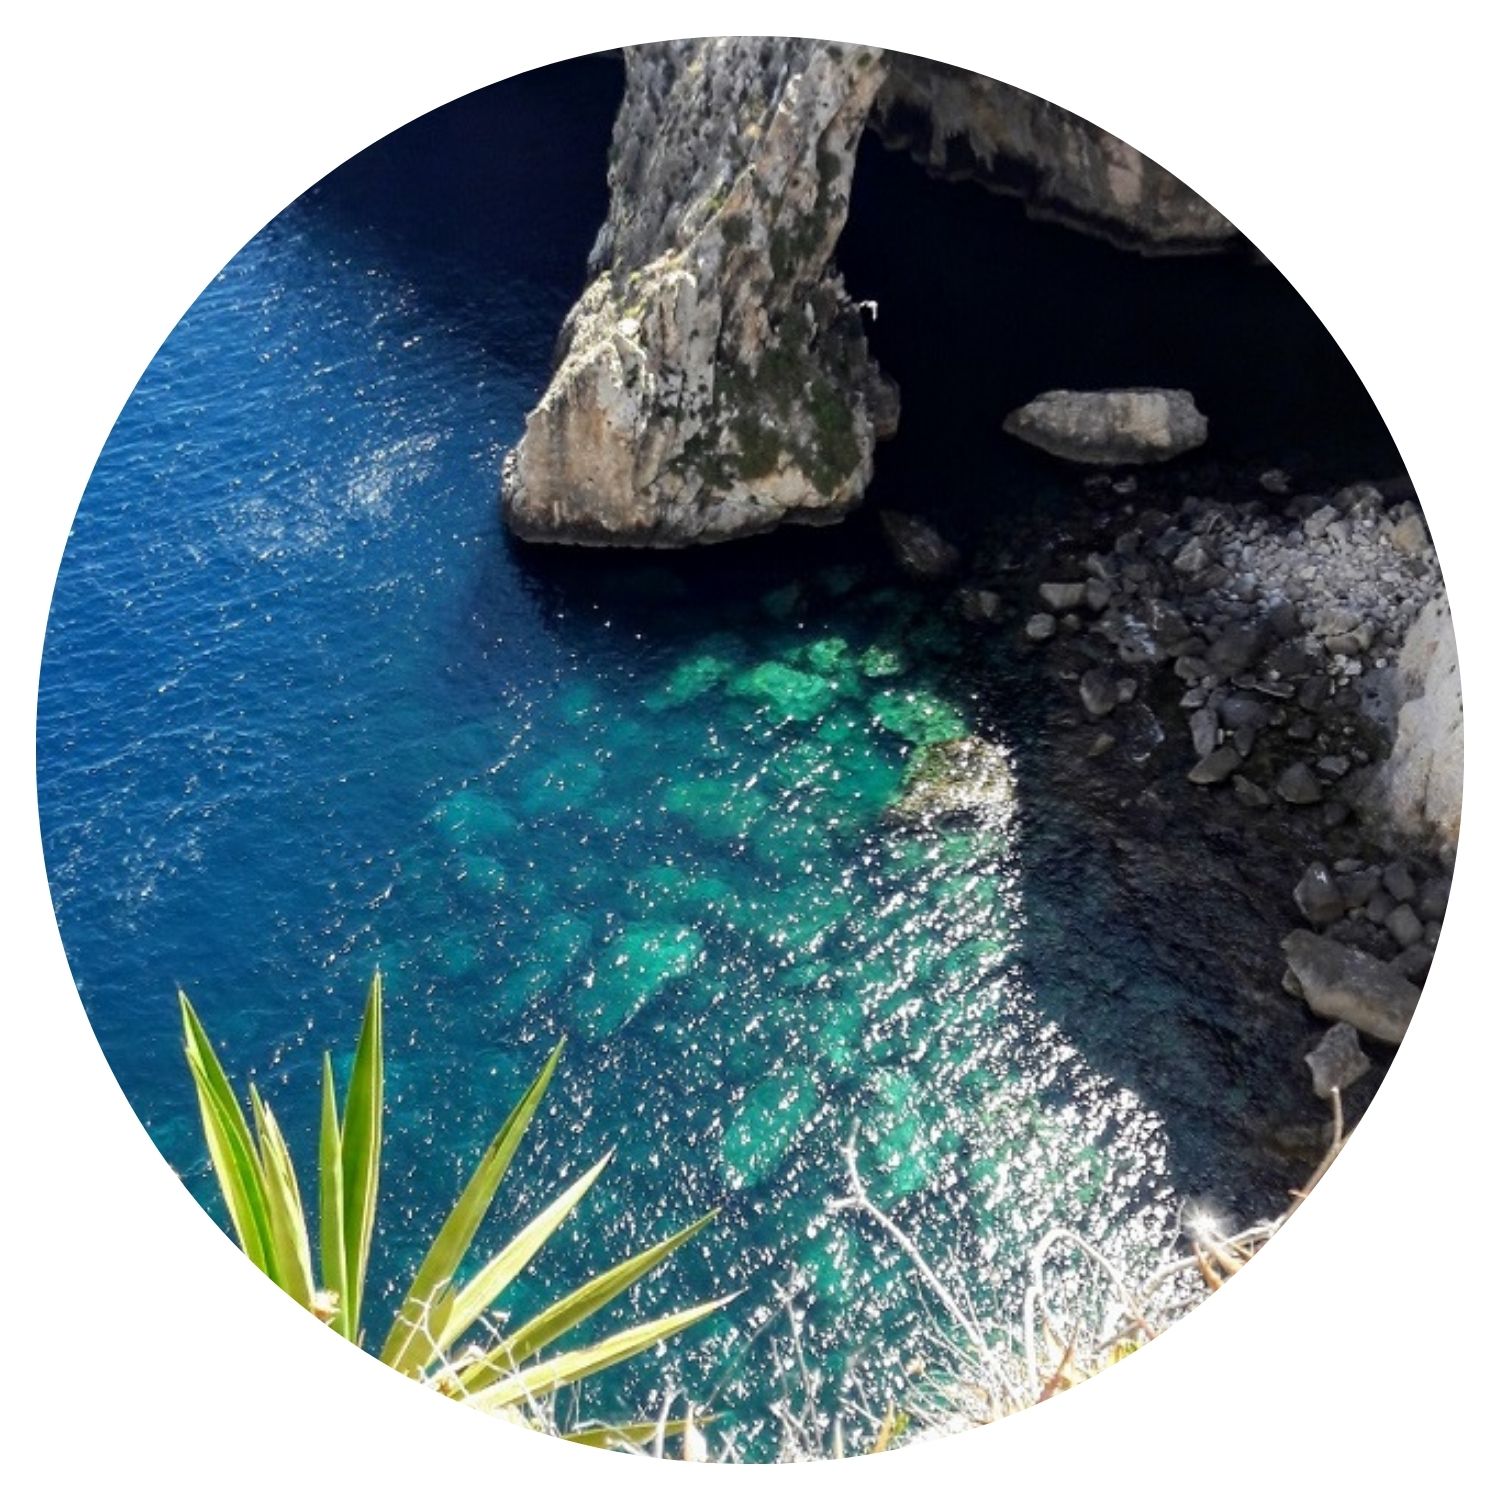 Un grand rocher émerge majestueusement au milieu de la mer, entouré d'eau turquoise et scintillante. La scène se déroule à Malte, offrant une vue impressionnante de la nature sauvage et marine de l'île.